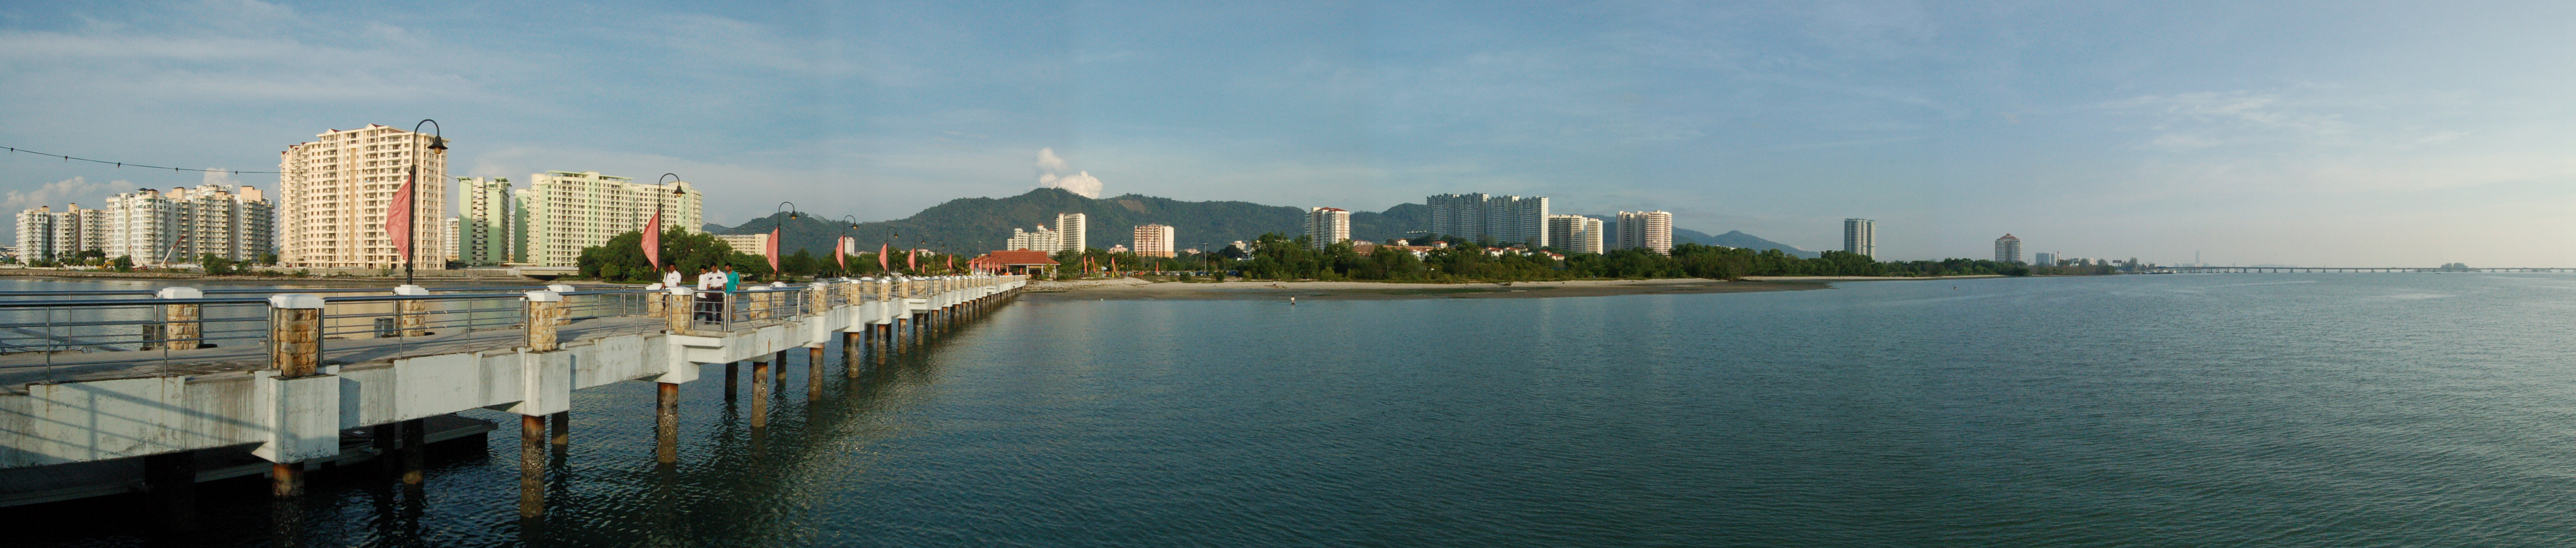 Penang-Jerejak Pier, Bayan Baru (Penang Island, Malaysia)